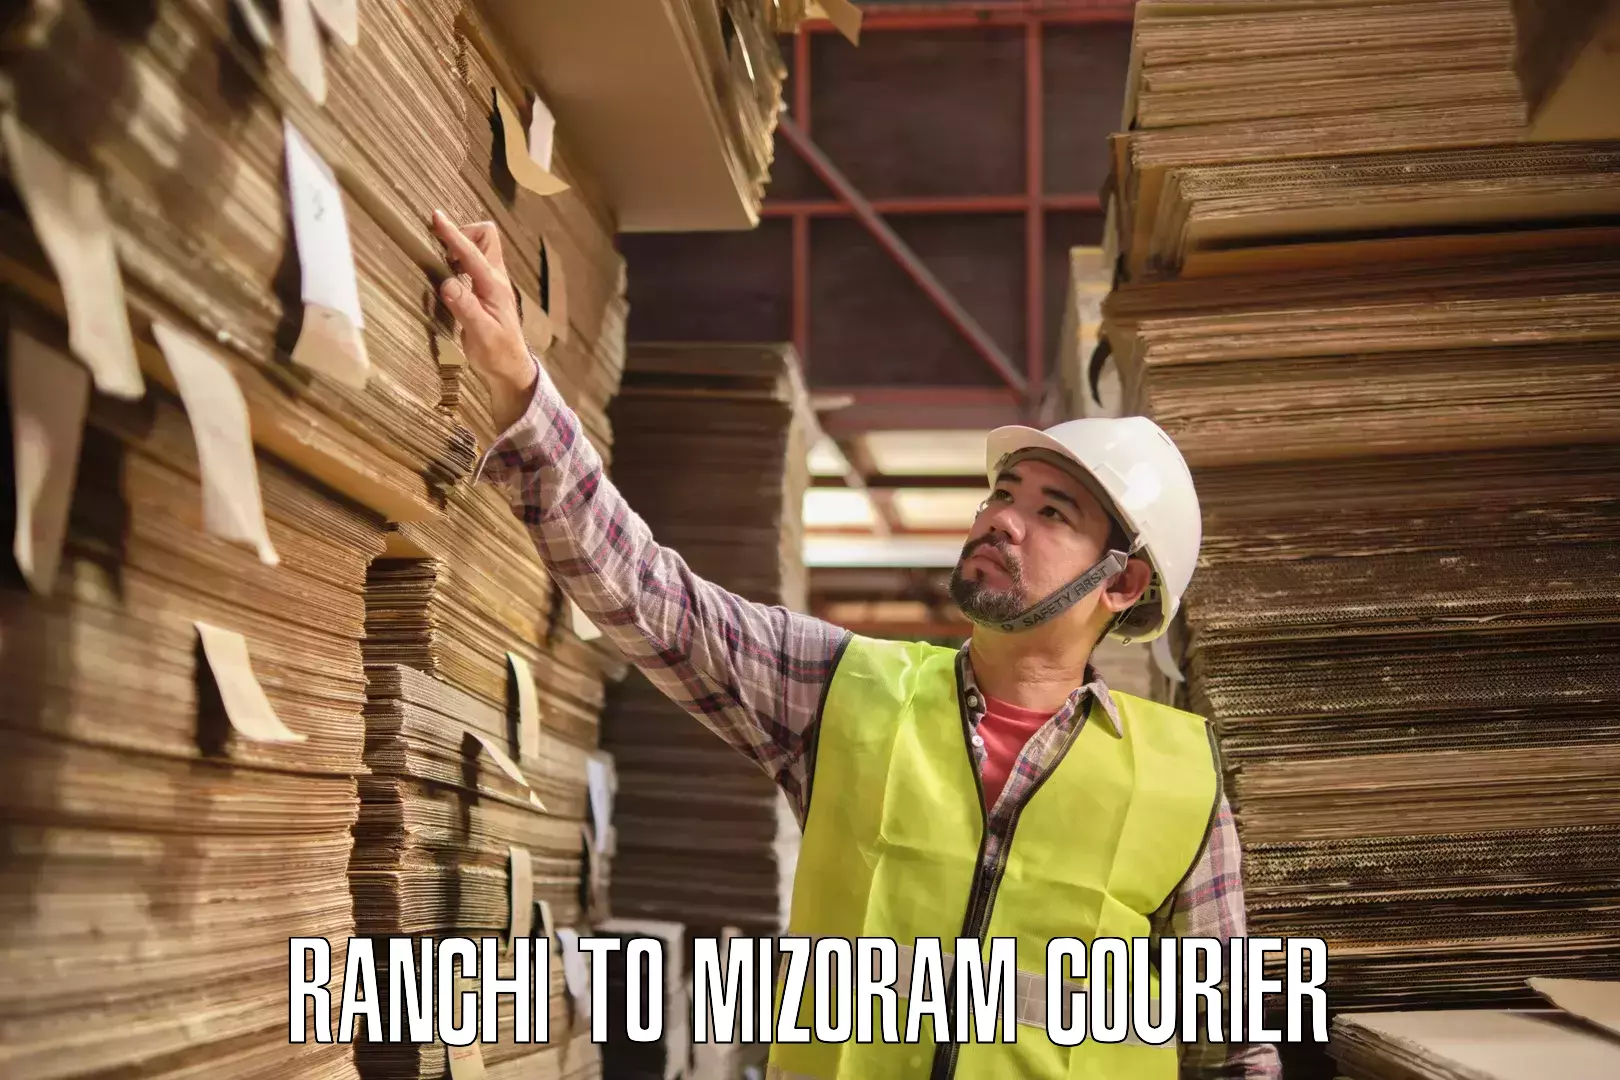 Cargo courier service Ranchi to Mizoram